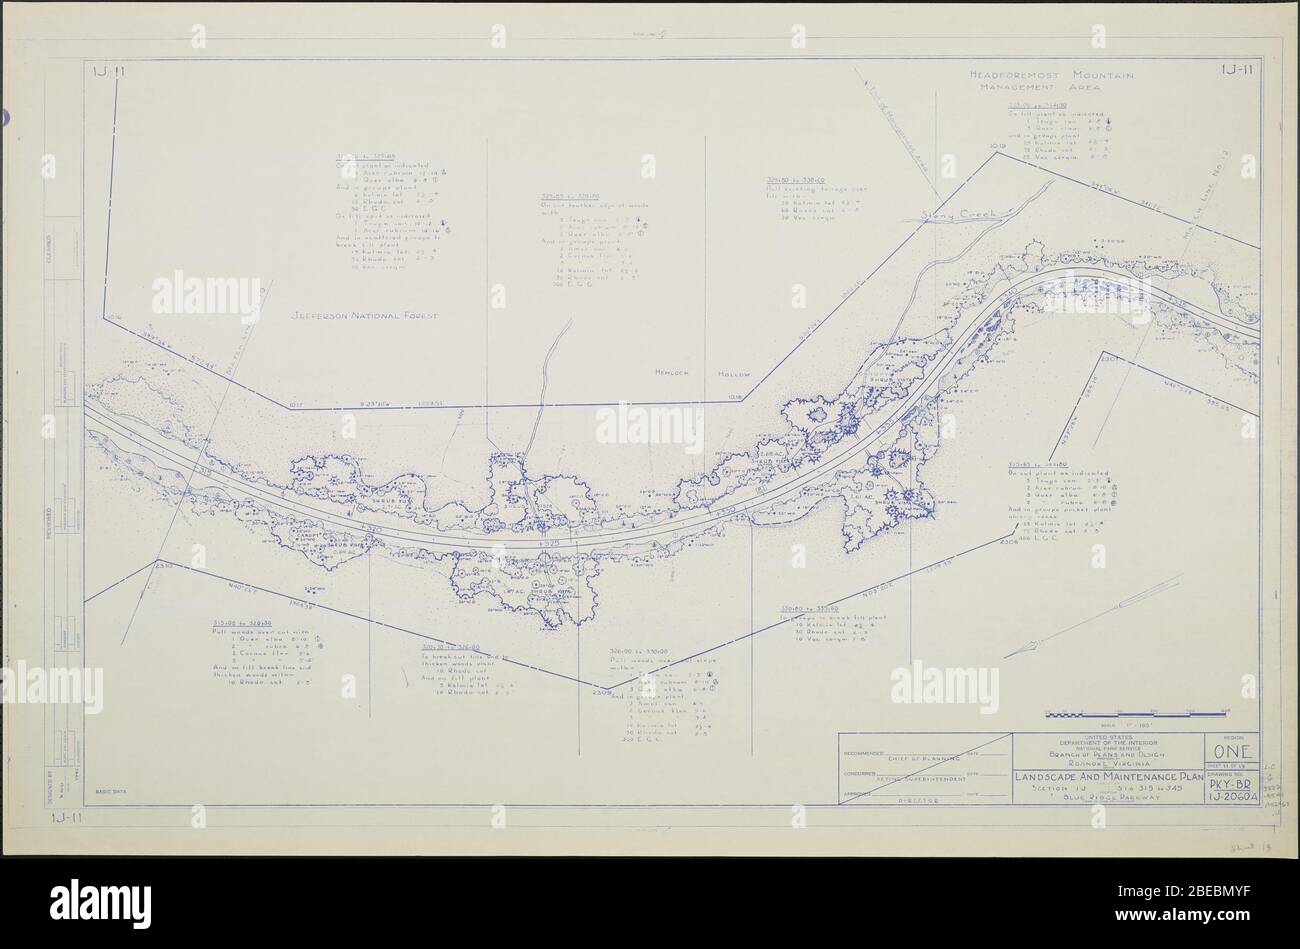 'Blue Ridge Parkway, Región 1 Hoja 11; un mapa de Blue Ridge Parkway con detalles sobre los árboles, arbustos y plantas de semillero cercanos. Incluye Stony Creek, Hemlock Hollow, la zona de gestión de la montaña Headforest y el bosque nacional Jefferson. Plano no 1J-11. Escala 1=100'.; 1942Date QS:P571,+1942-00-00T00:00:00Z/9; ' Foto de stock